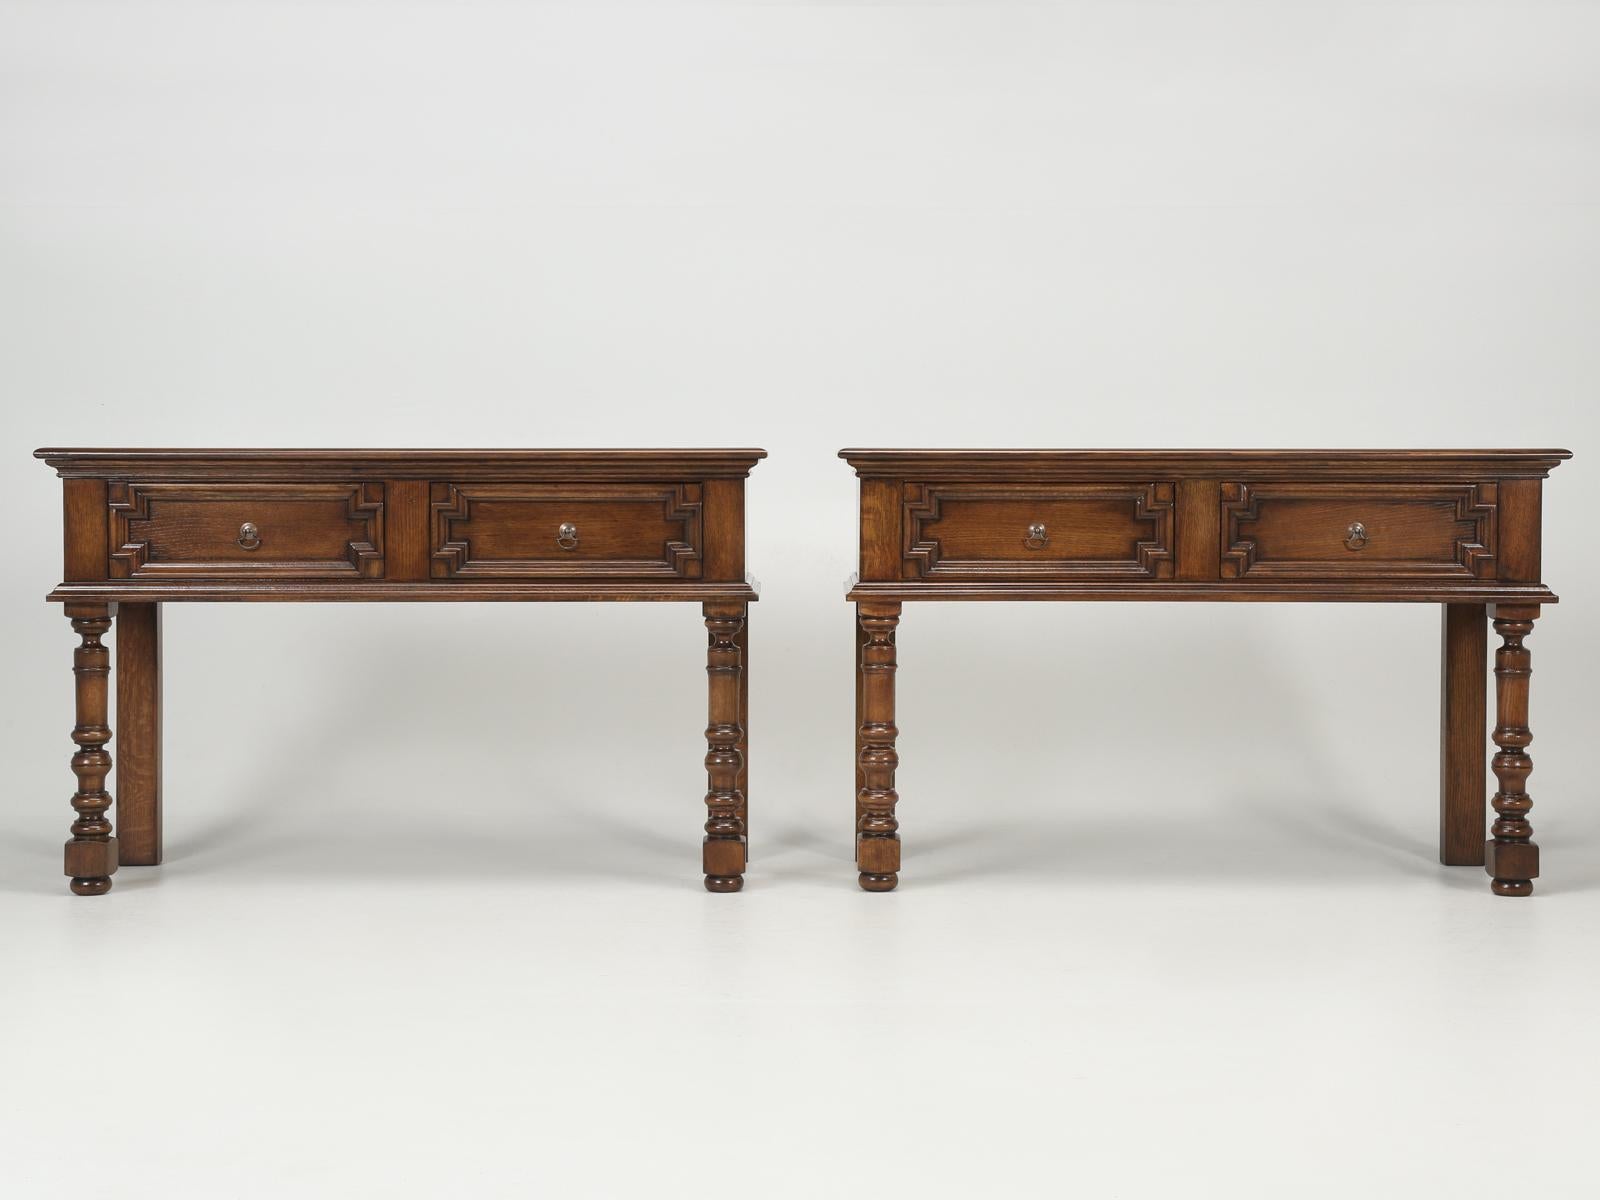 Paire de tables consoles anglaises fabriquées sur mesure et disponibles dans toutes les dimensions. La paire de tables consoles a été construite dans le style de William & Mary (1700-1725). Nos tables de console de style anglais Old Plank sont